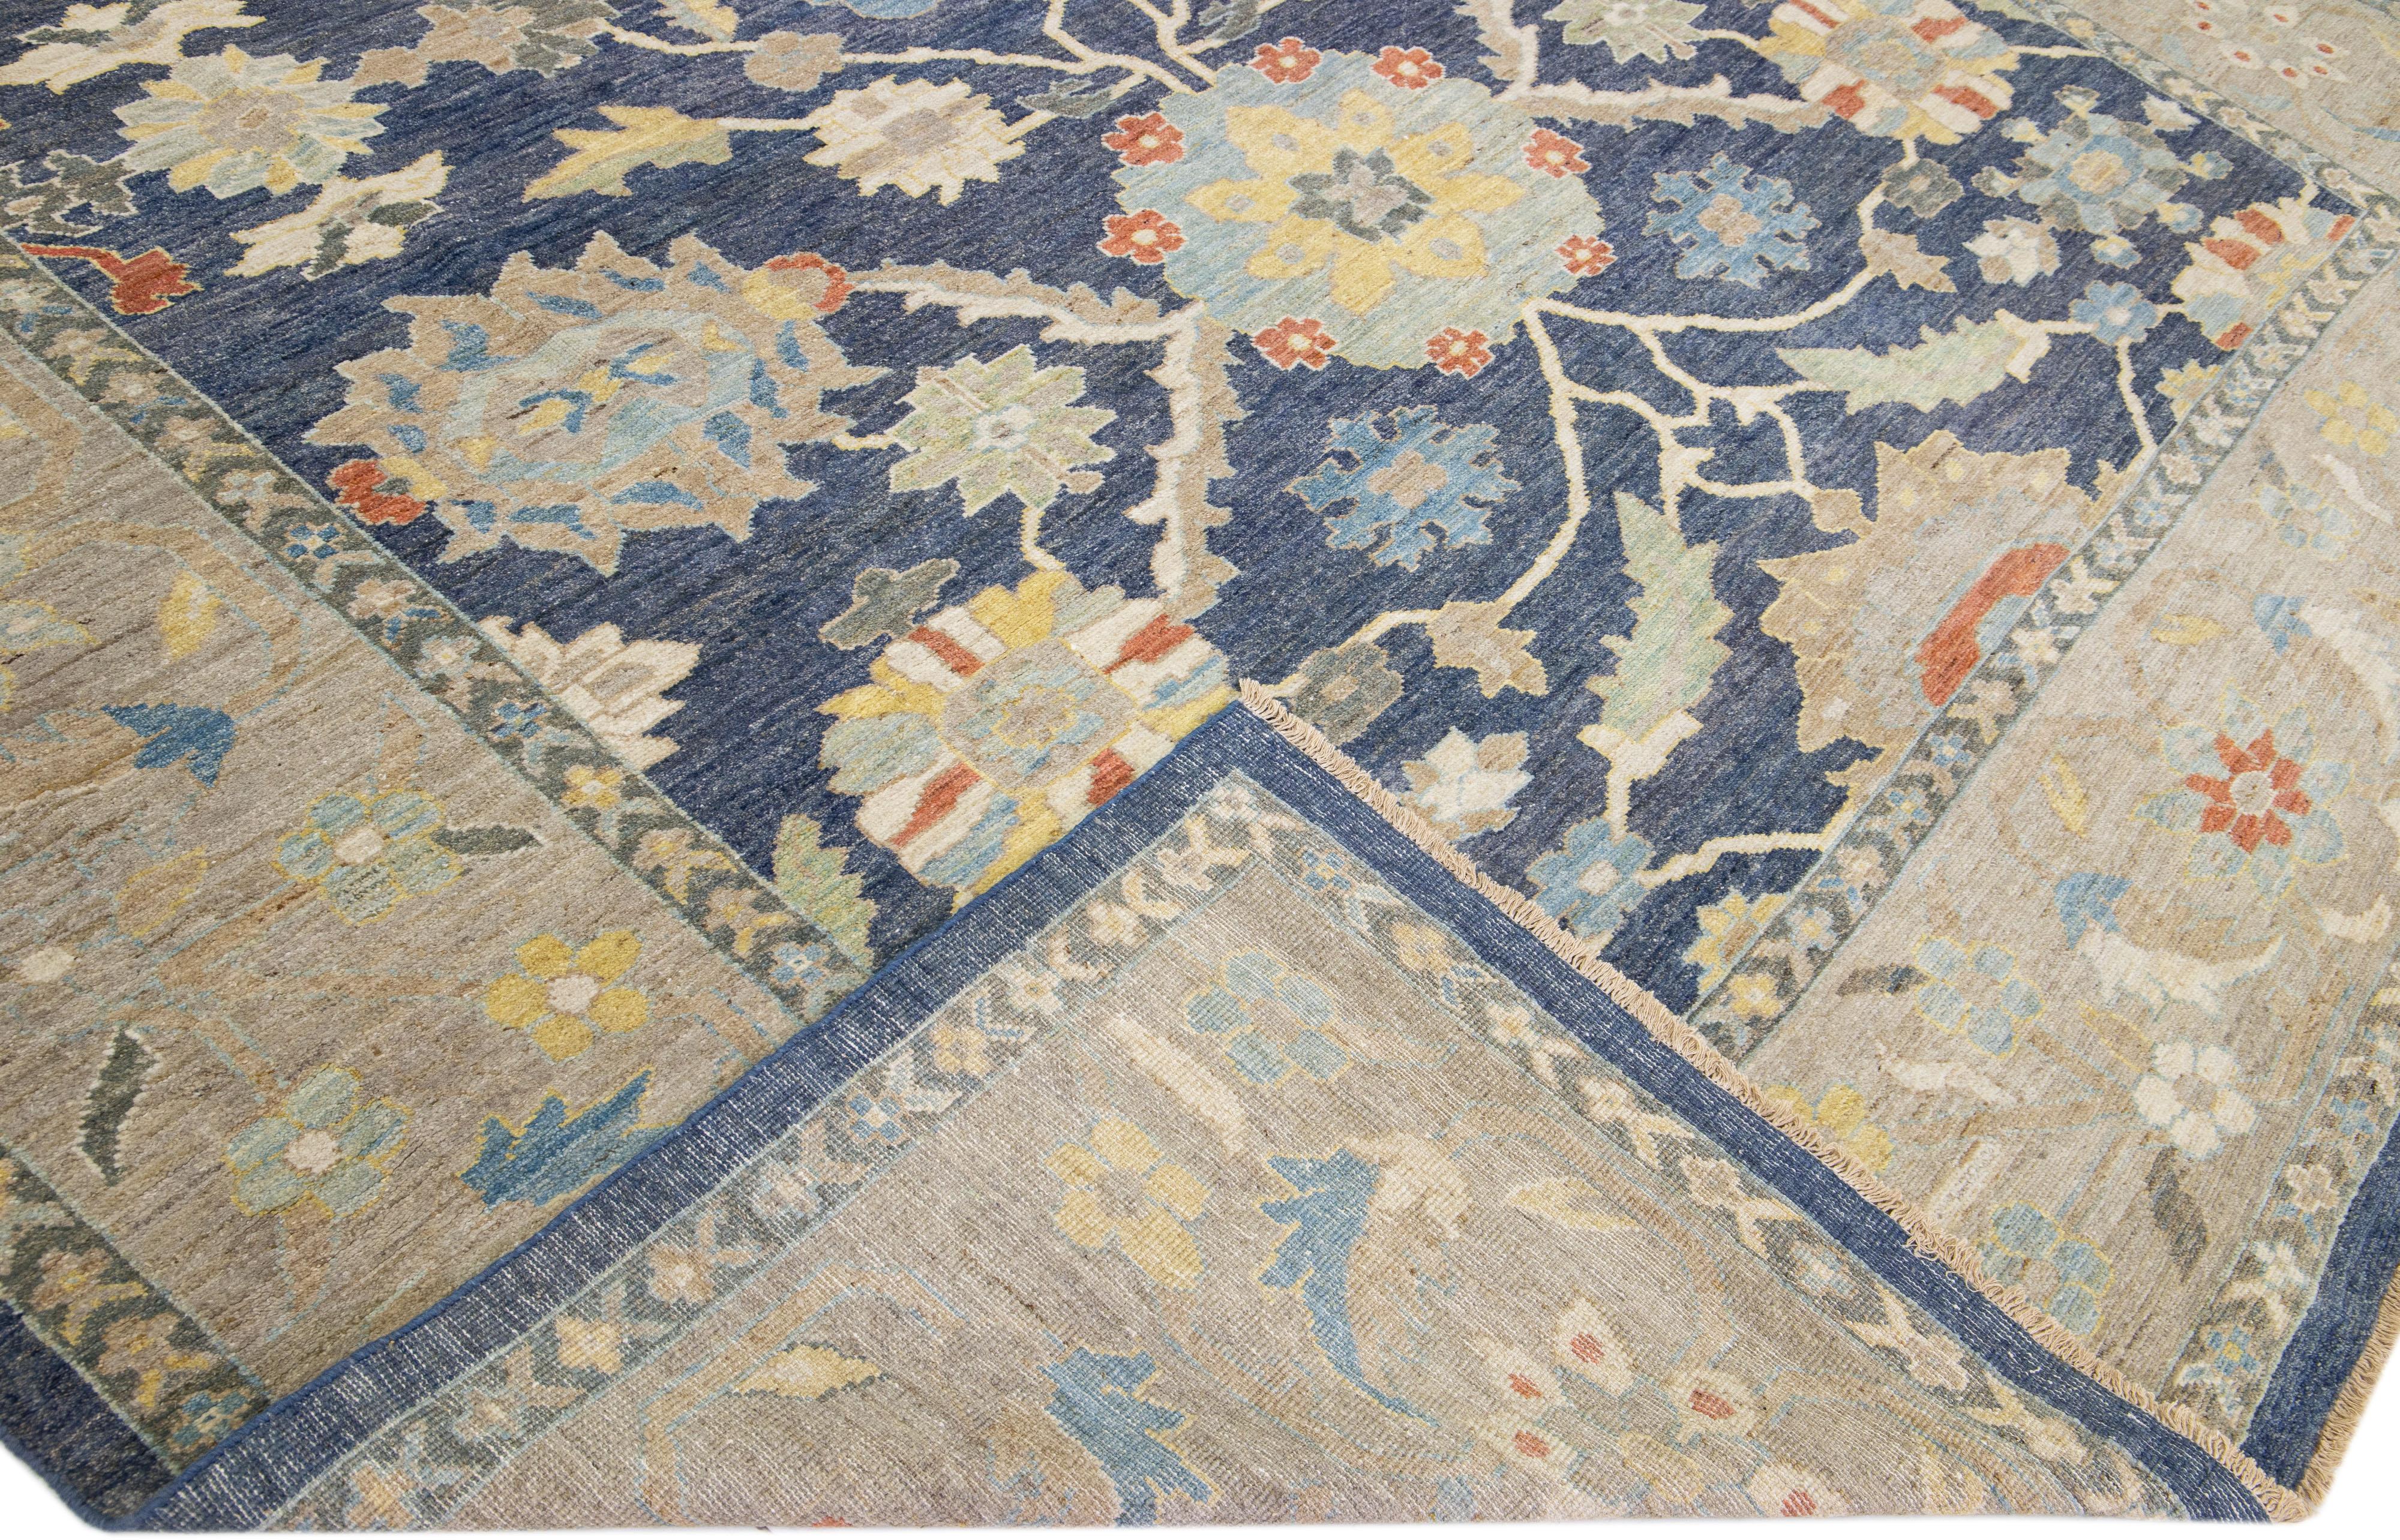 Schöner moderner Sultanabad Teppich aus handgeknüpfter Wolle mit grauem Feld. Dieser Teppich hat einen beigen Rahmen und mehrfarbige Akzente in einem wunderschönen floralen Allover-Muster.

Dieser Teppich misst: 11'2